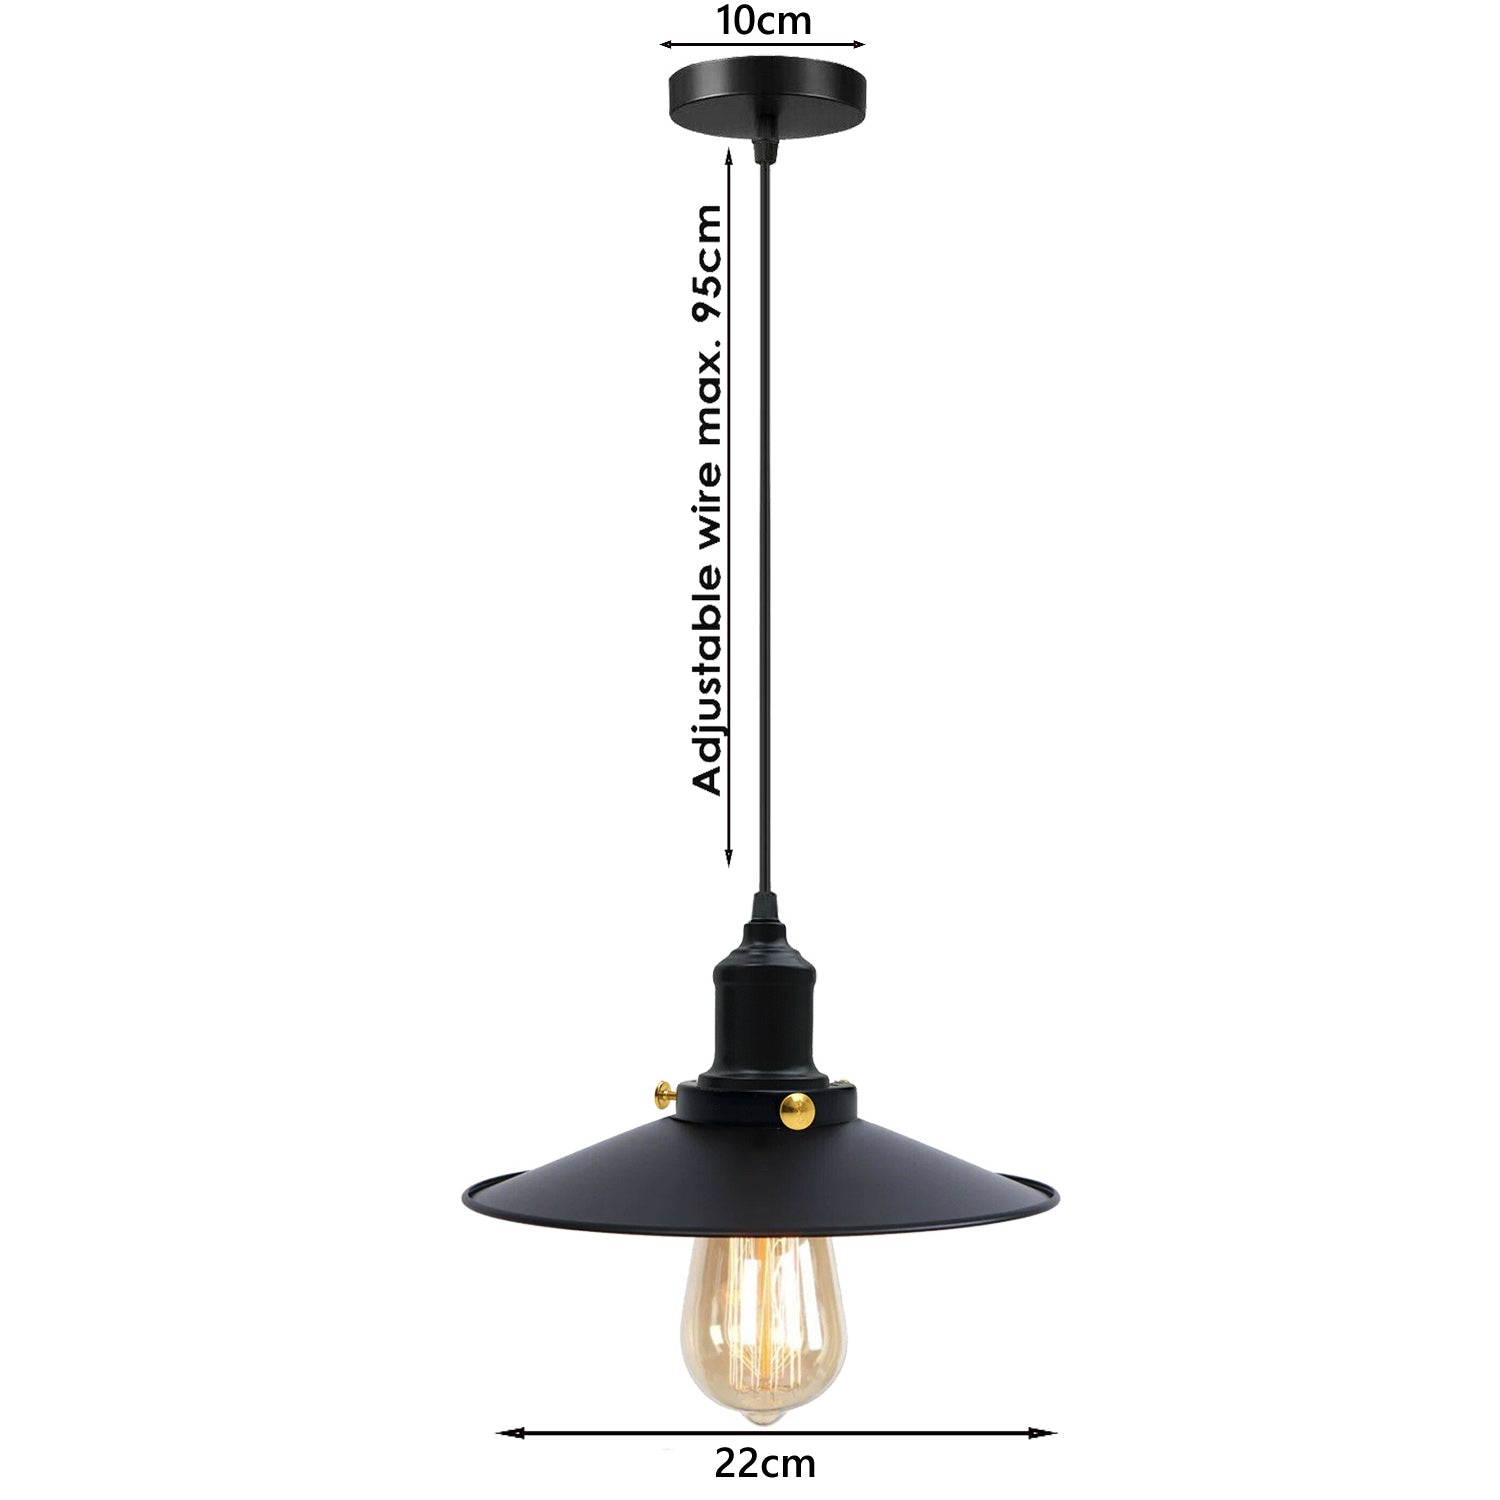 Schwarz-Vintage Deckenlampe Leuchte Pendelleuchte – Design Hängelampe Retro Industrie